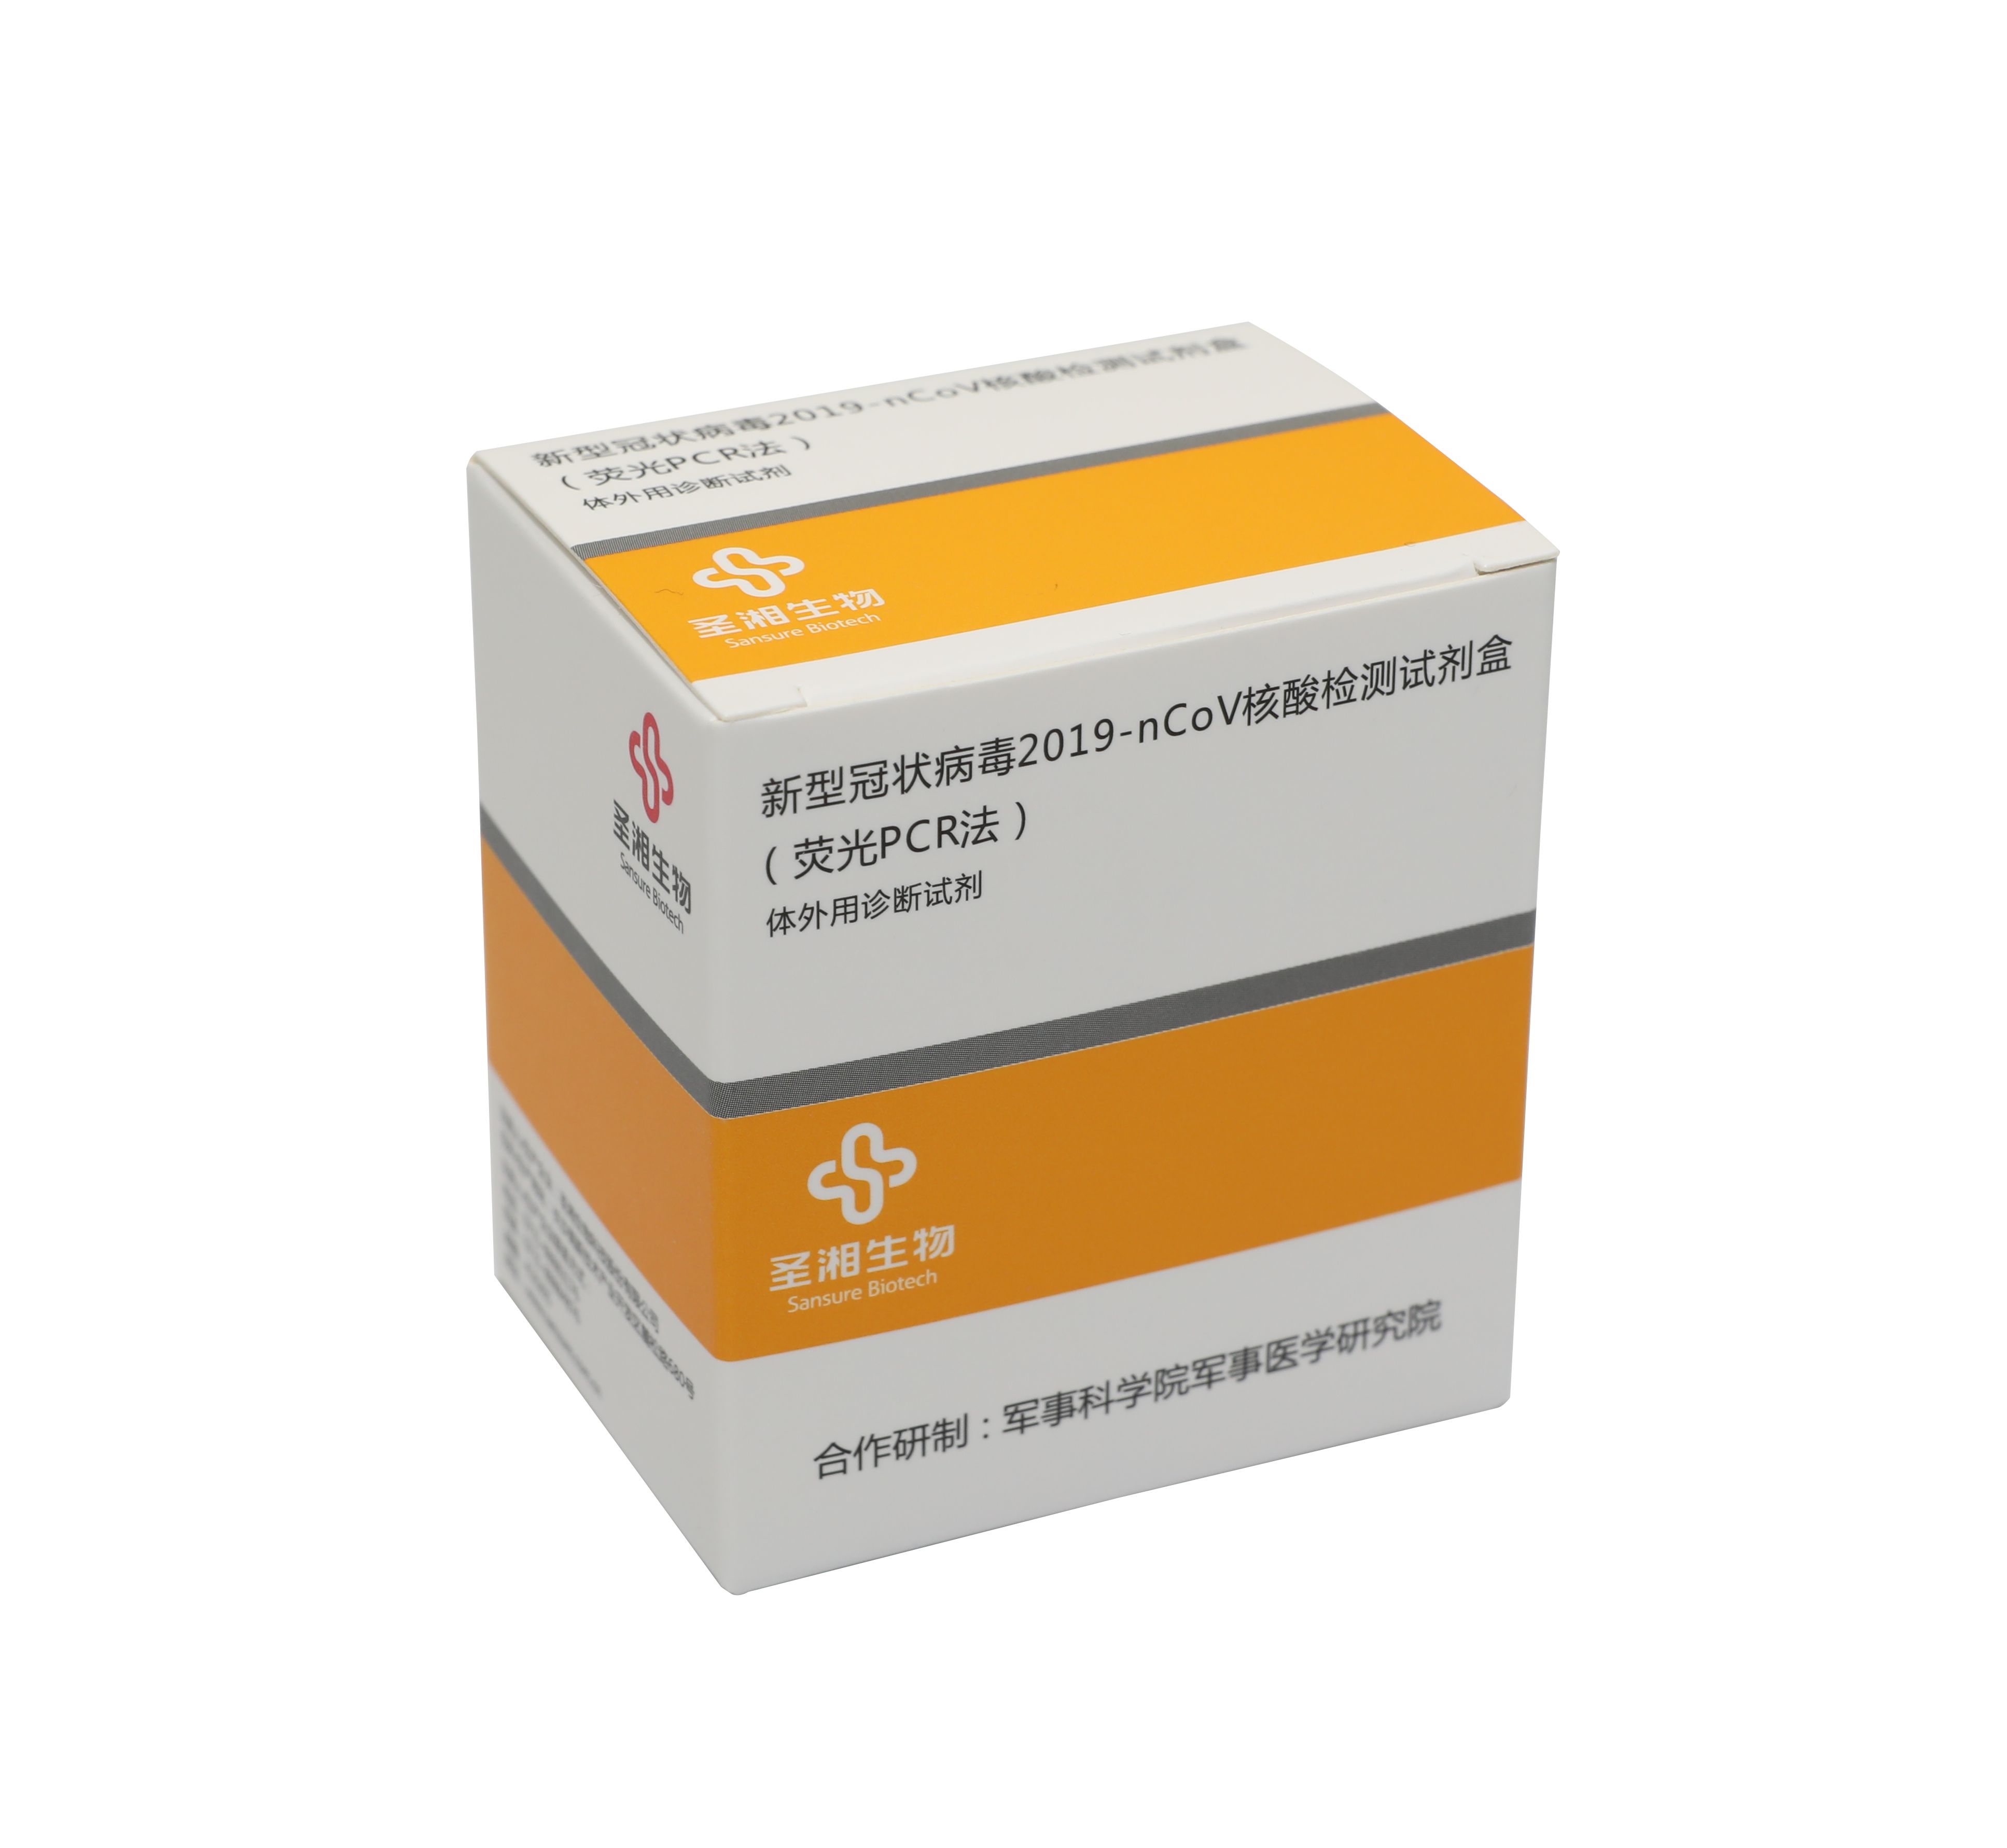 【圣湘】新型冠状病毒2019-nCoV核酸检测试剂盒(荧光PCR法)